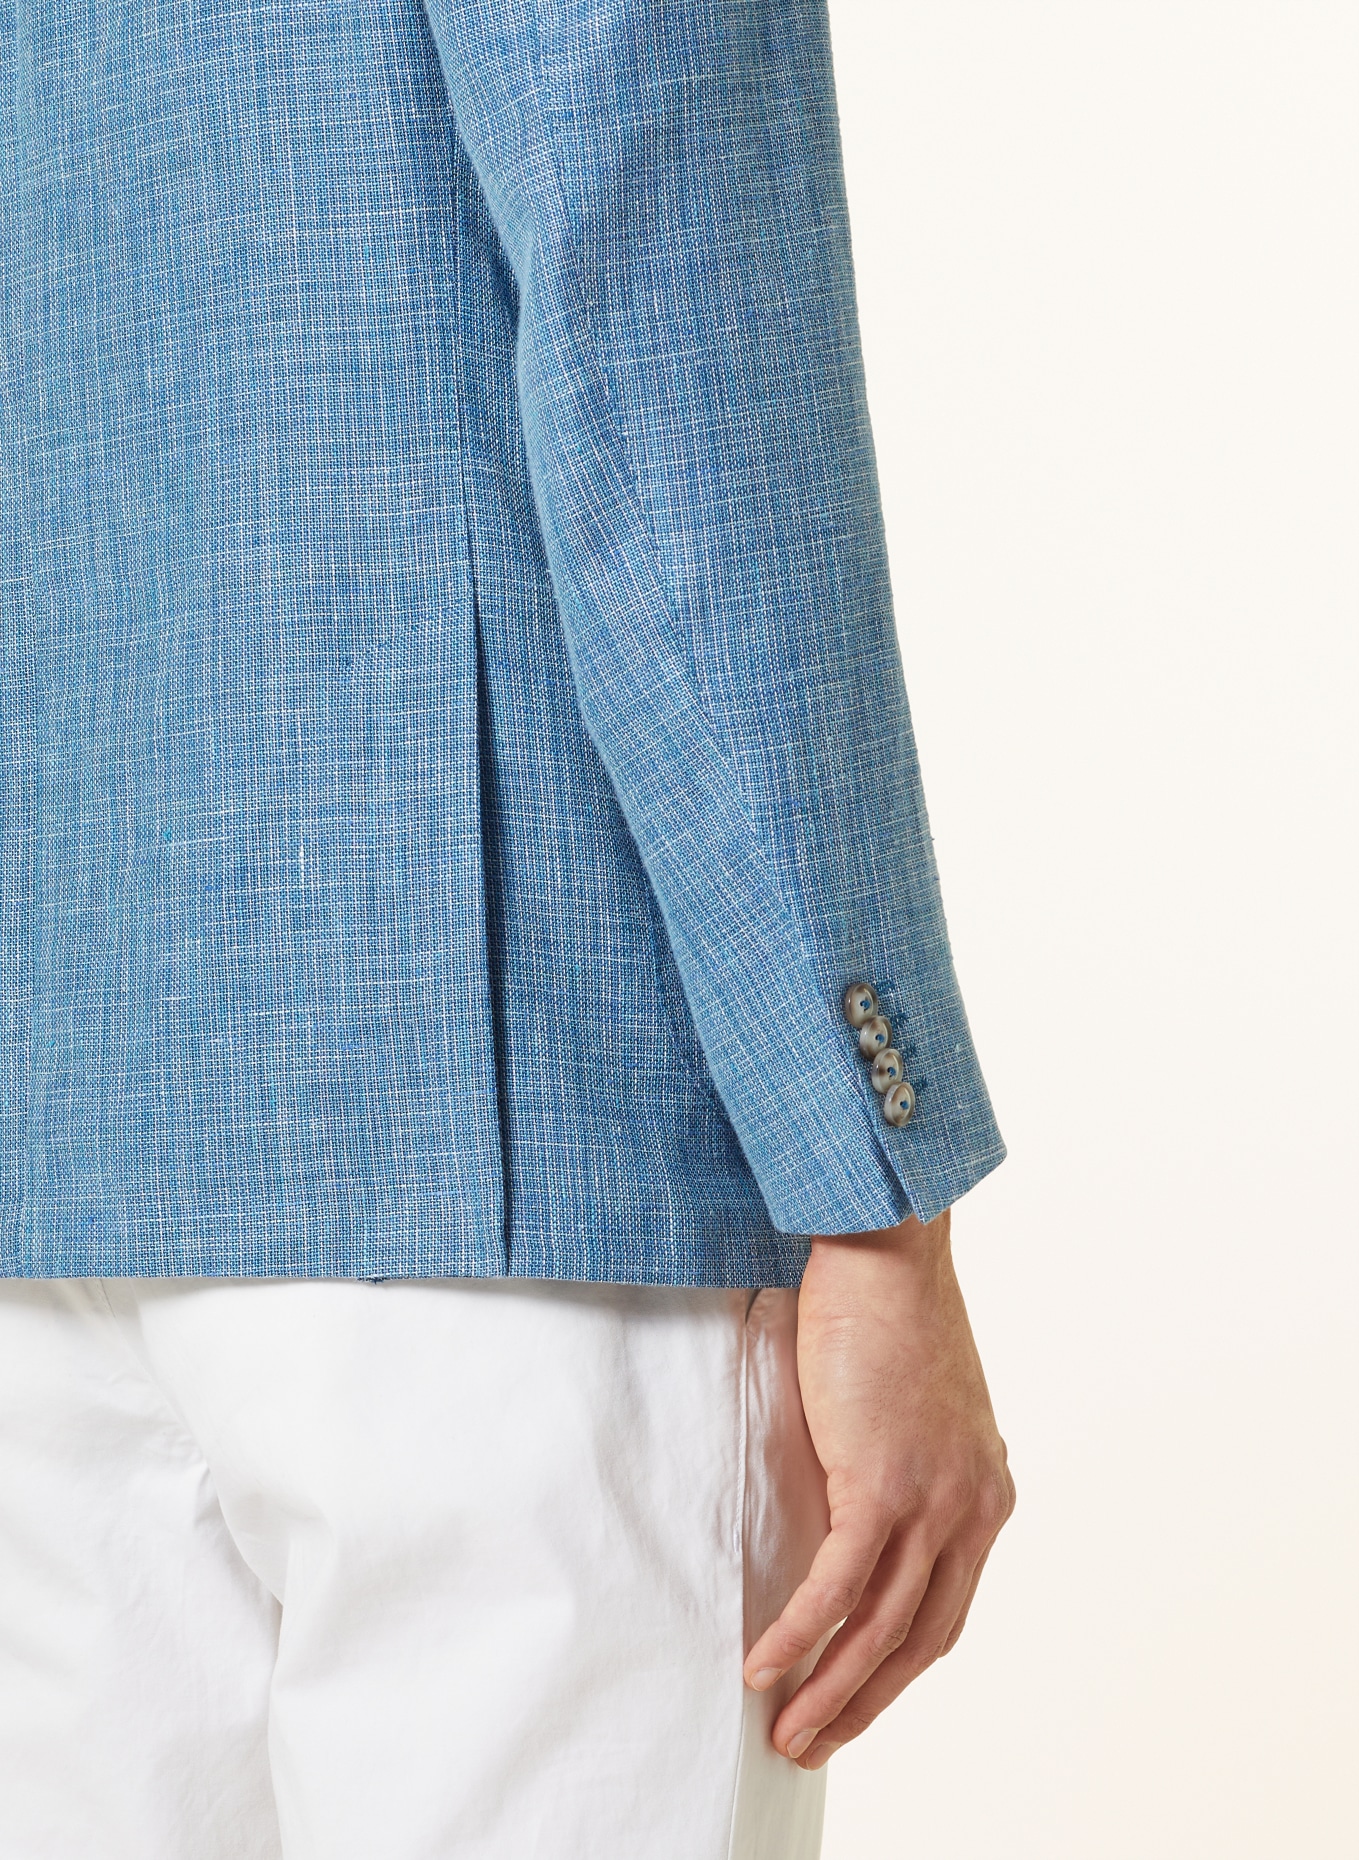 EDUARD DRESSLER Tailored jacket MATTEO comfort fit with linen, Color: 039 HELLBLAU (Image 6)